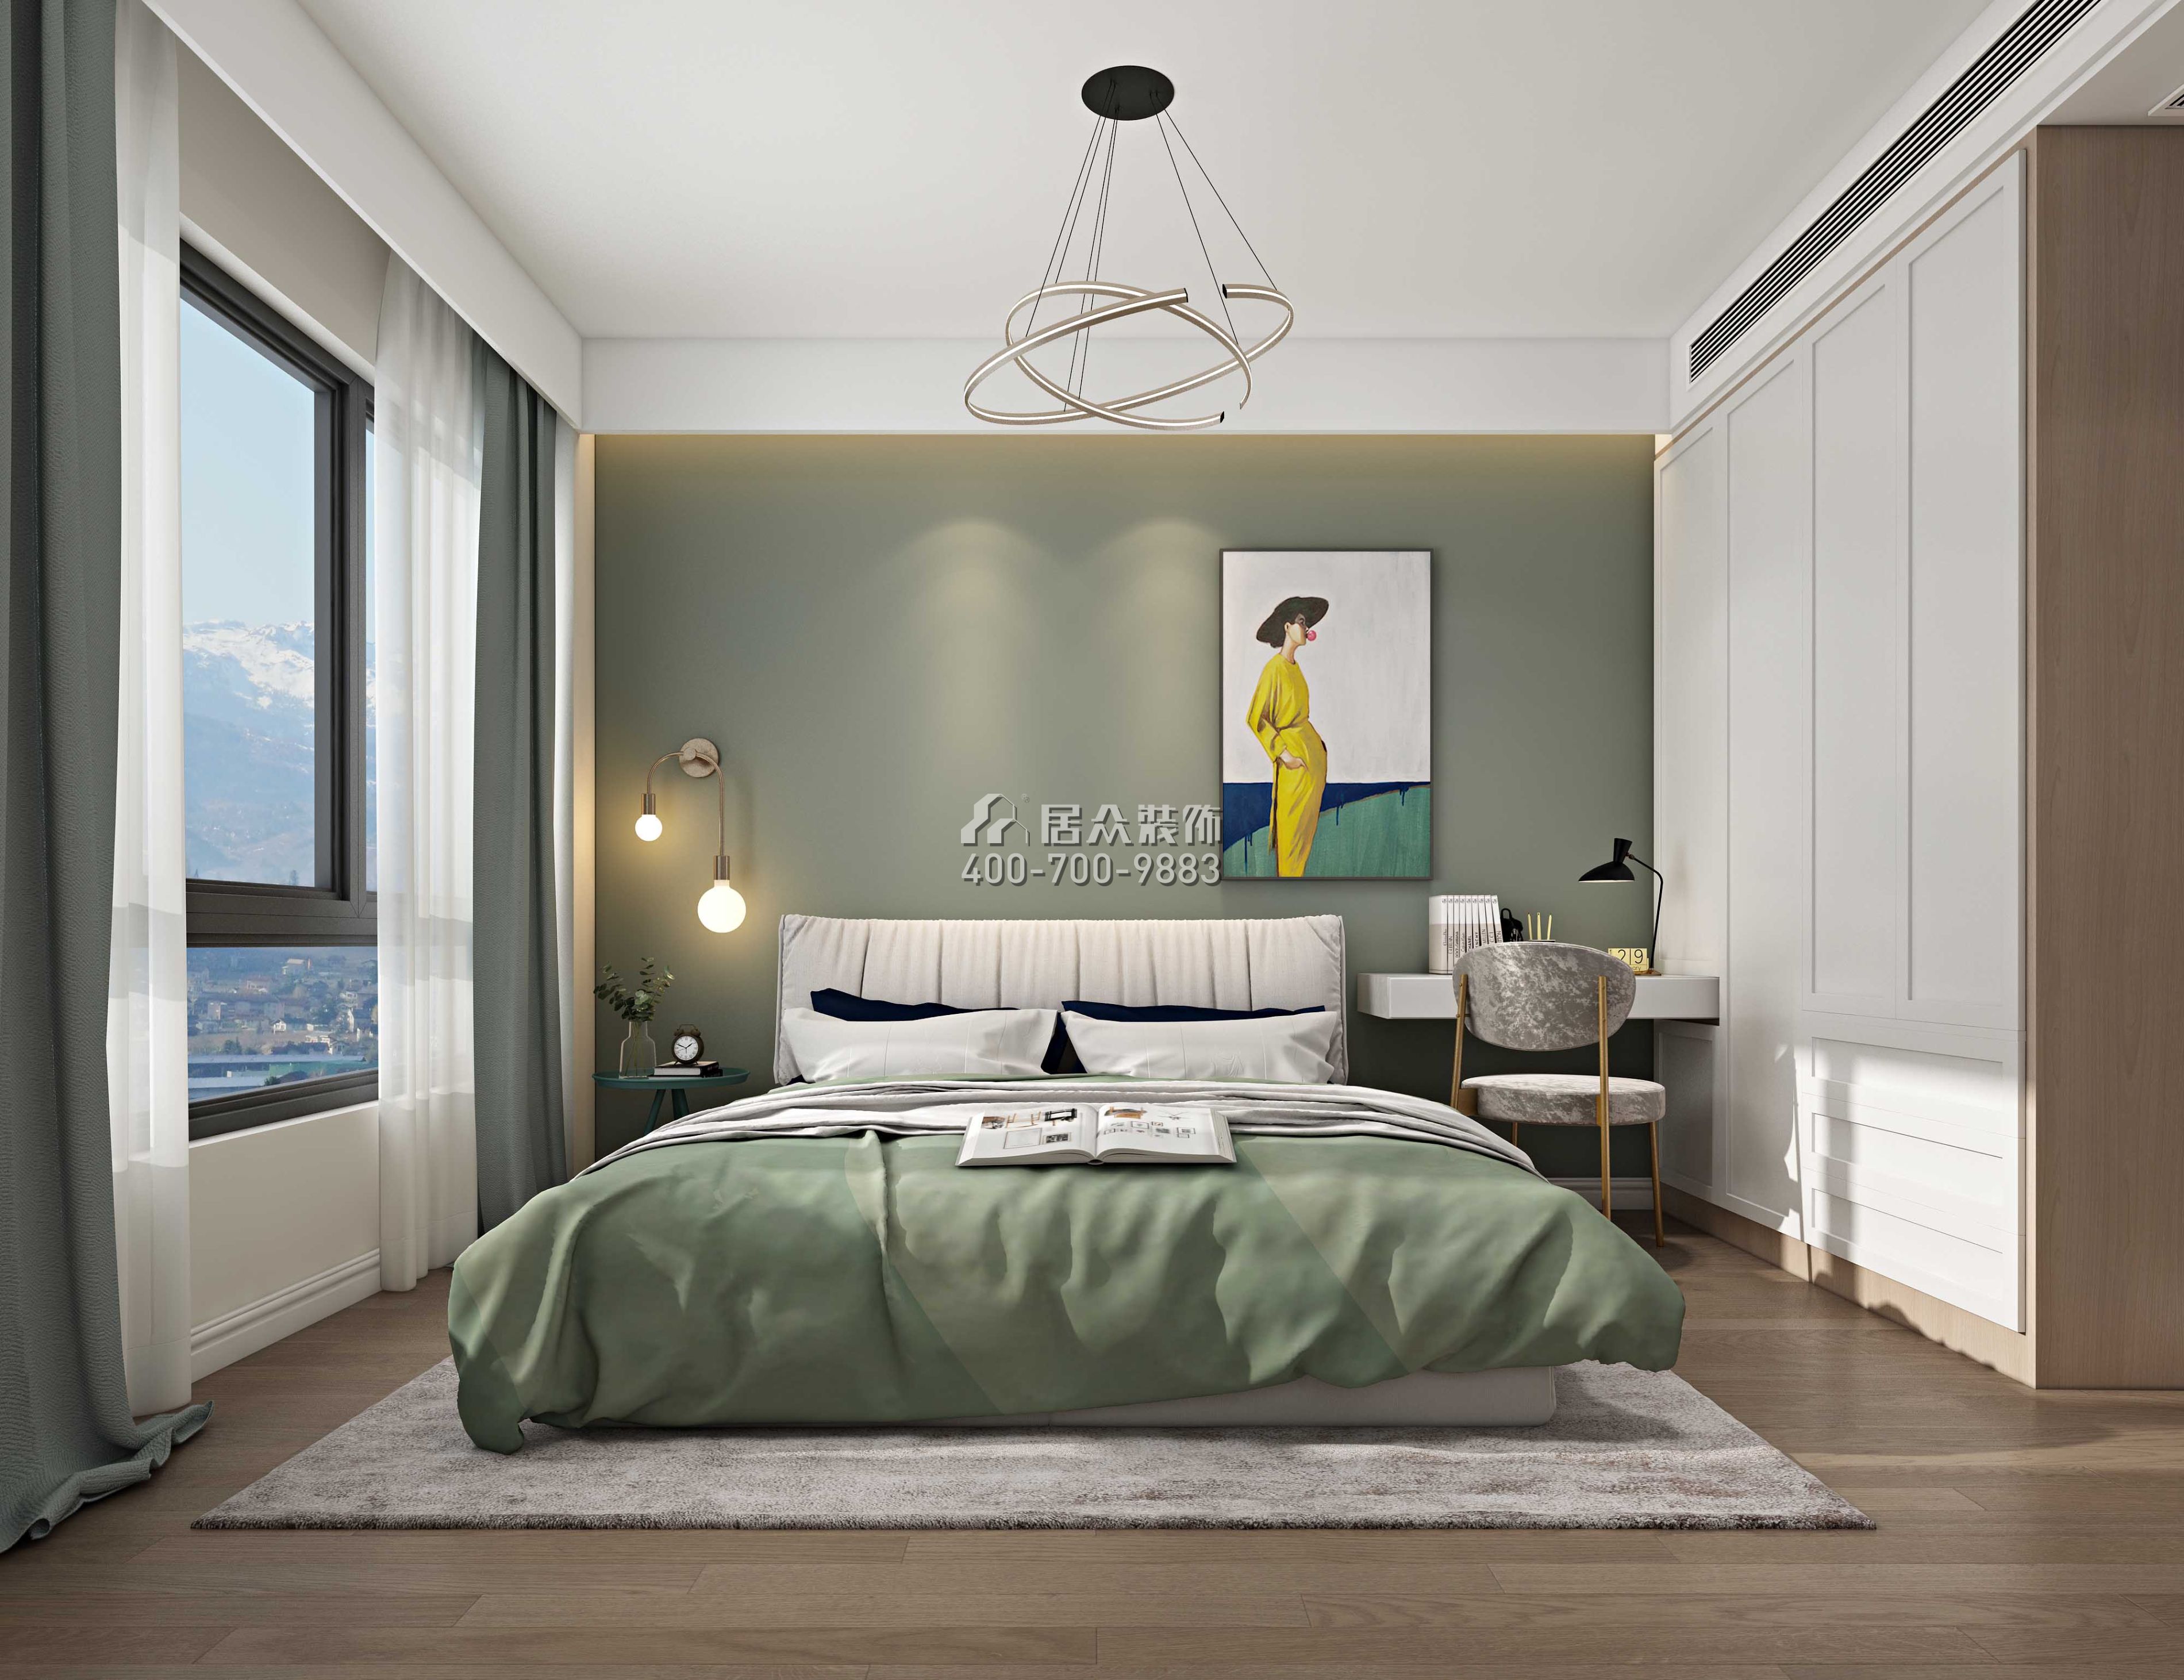 華強城83平方米北歐風格平層戶型臥室裝修效果圖